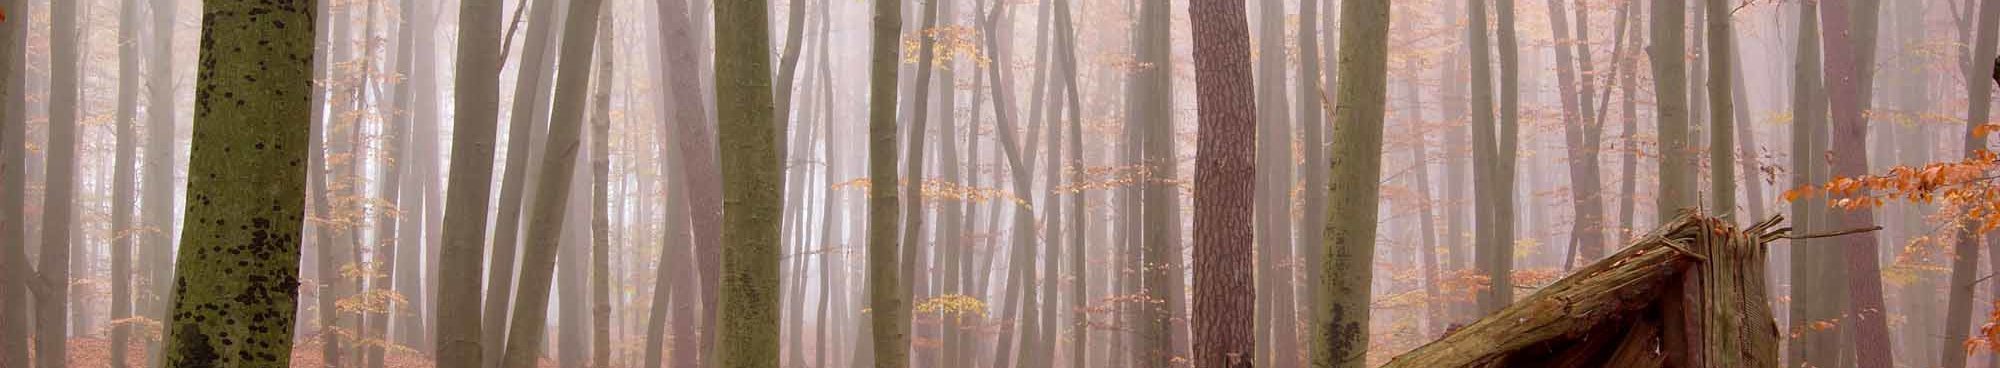 Herbstwald Nebel